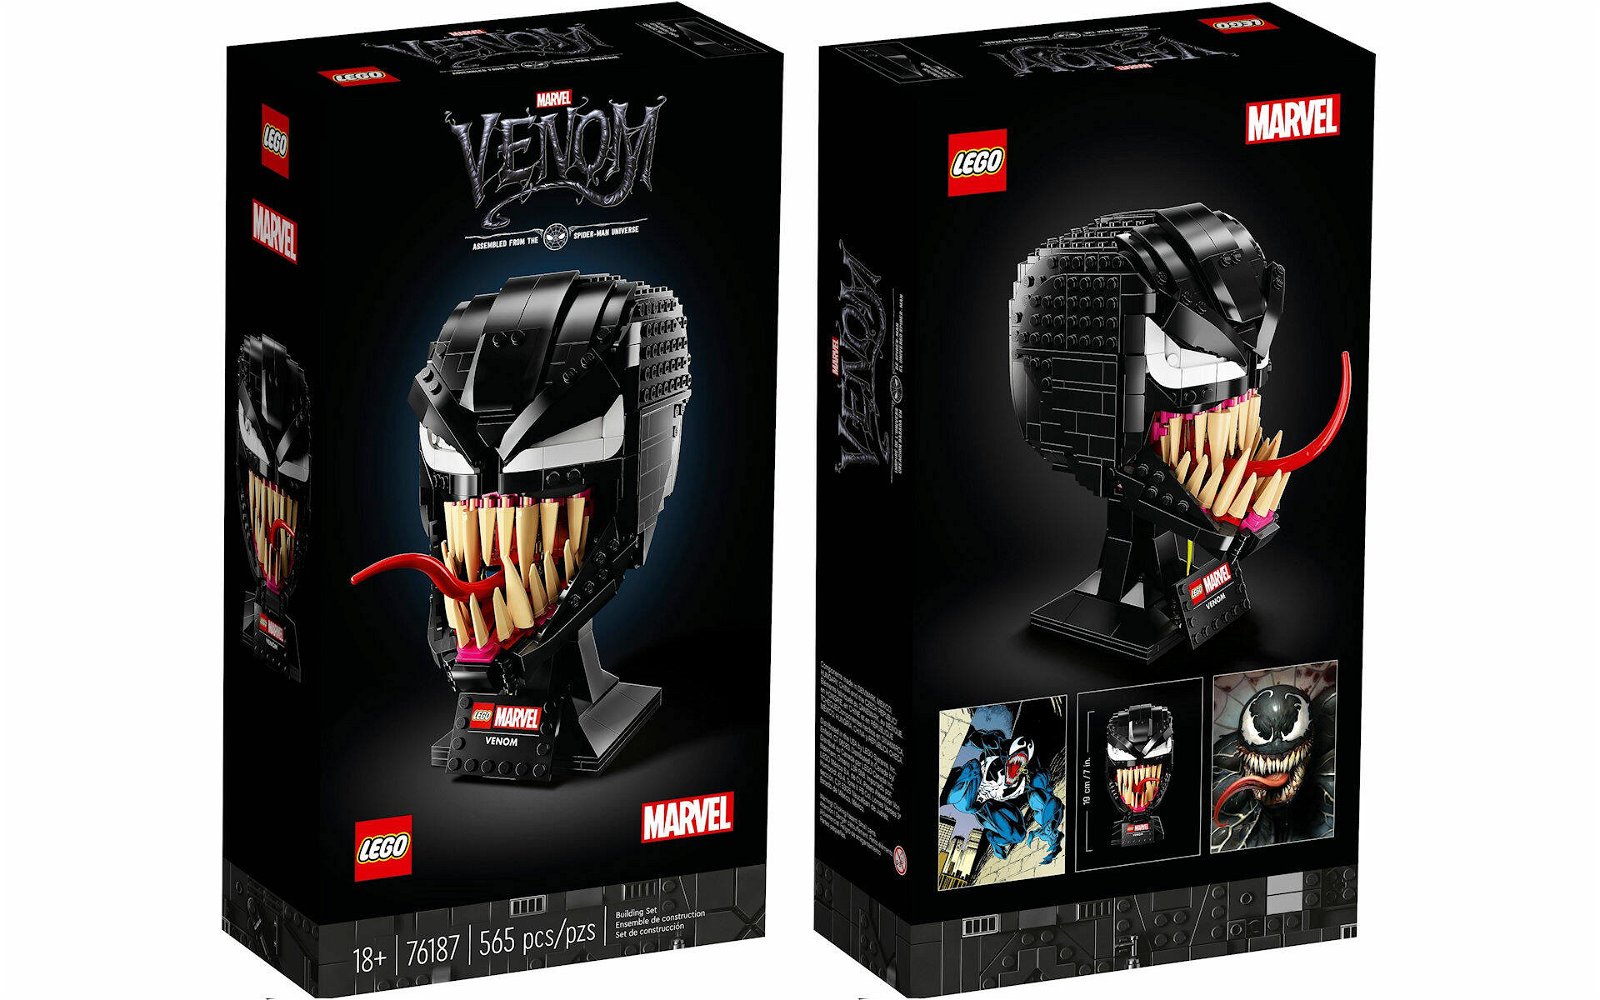 Immagine di LEGO: presto sugli scaffali il nuovo busto di Venom